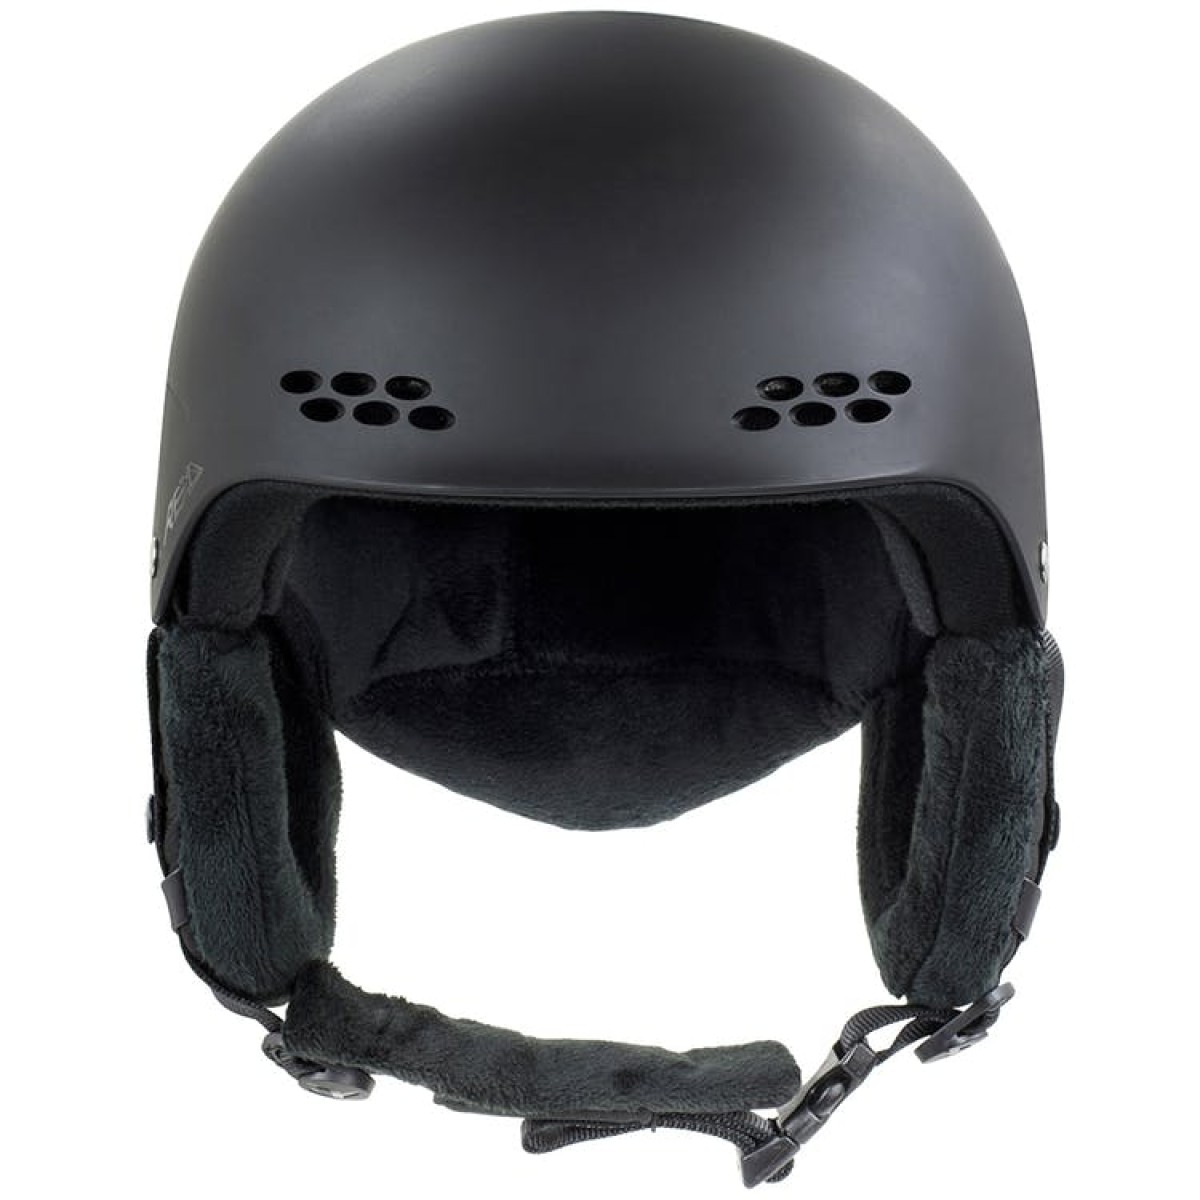 REKD Sender BLK Snow Helmet for skiing and snowboarding REKD - view 5